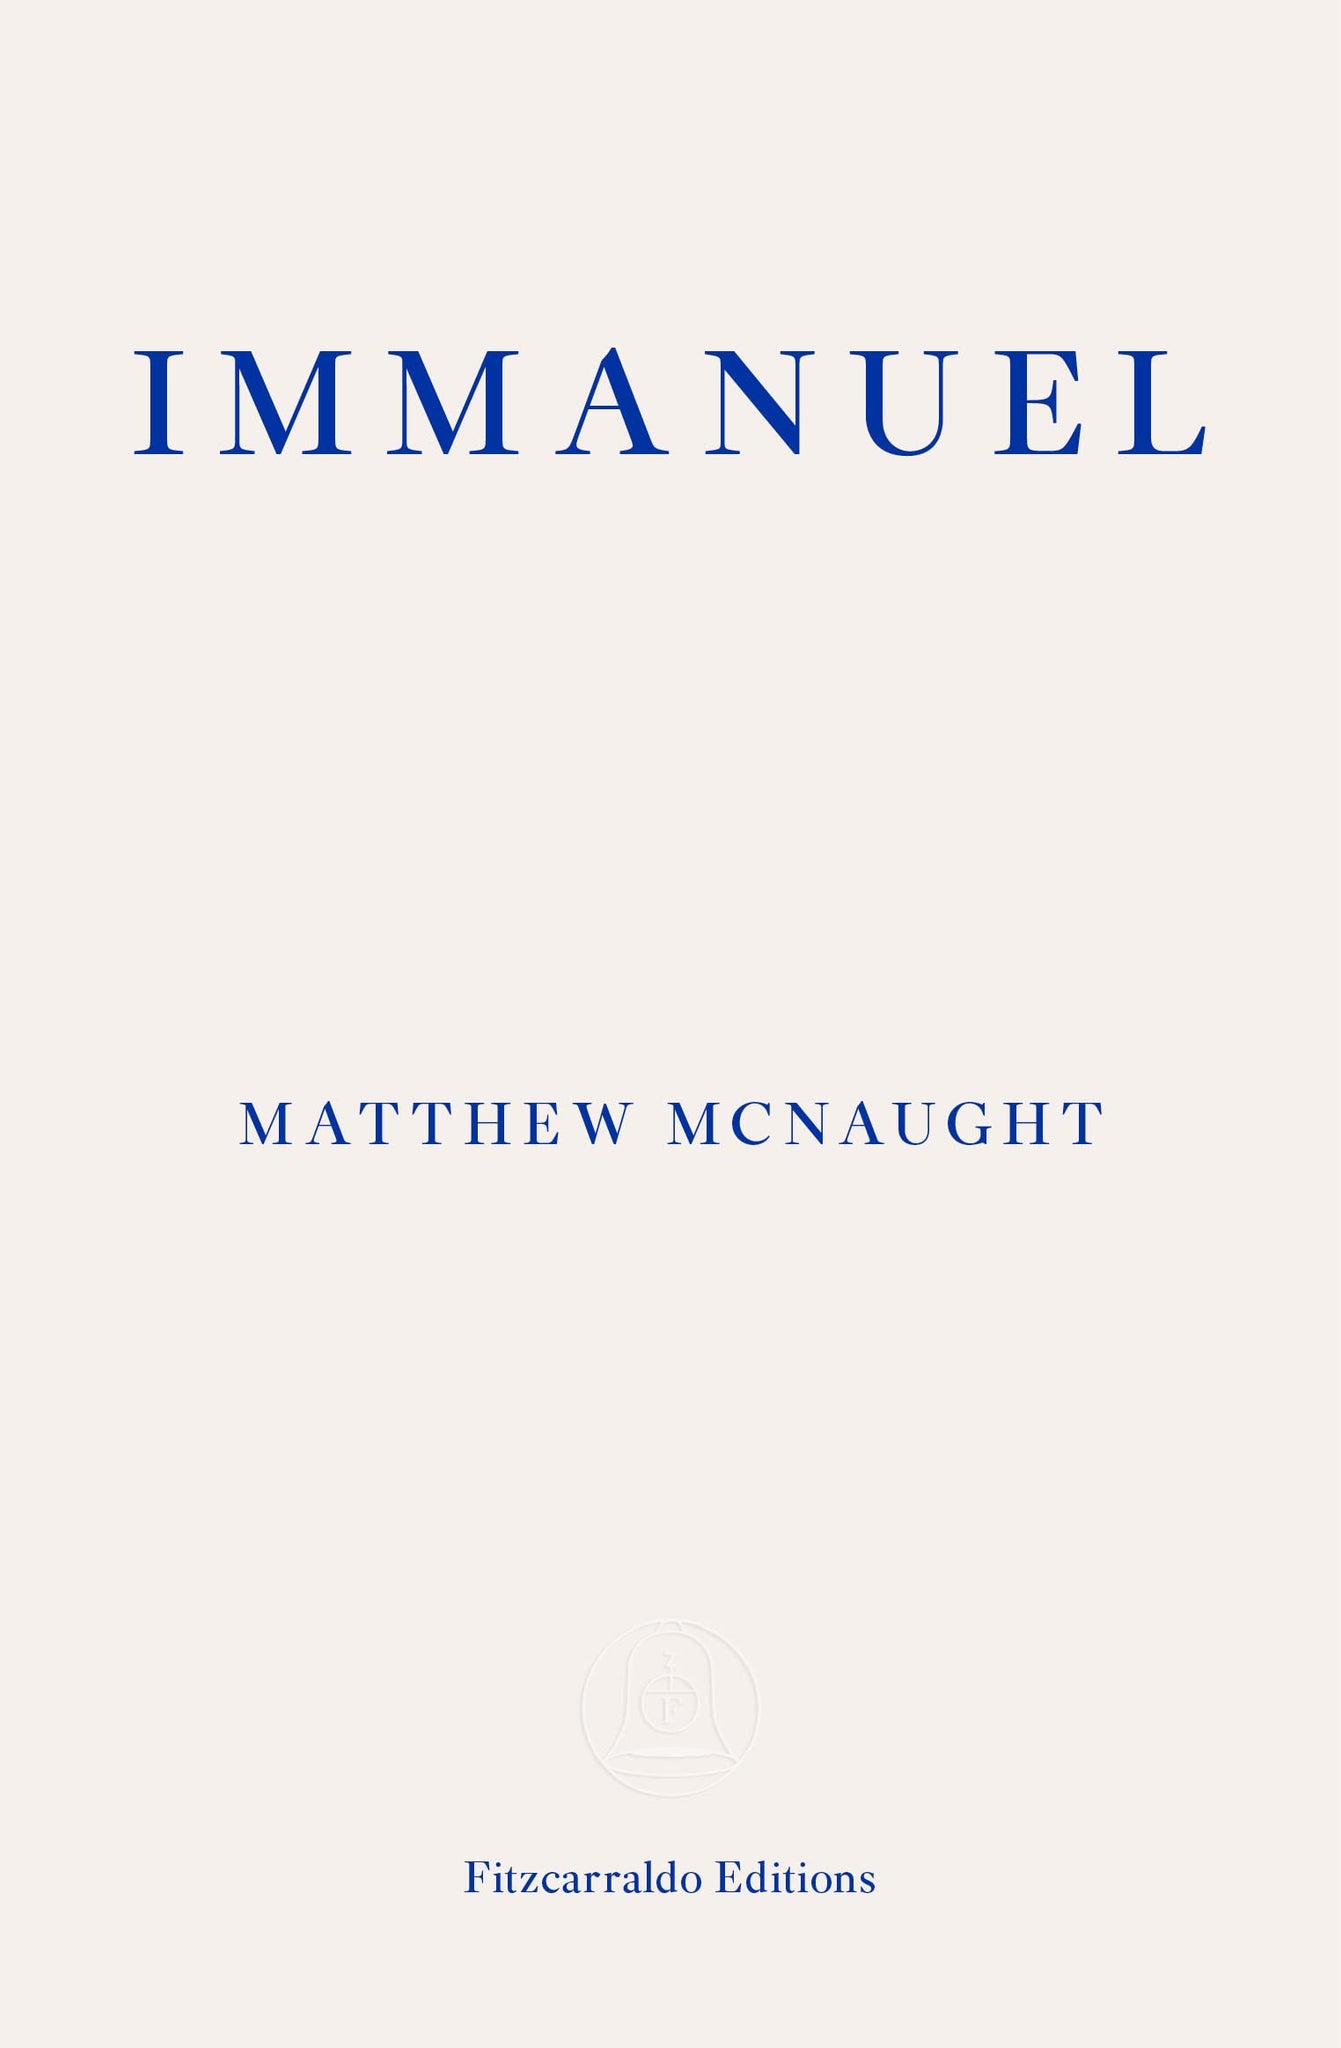 Immanuel by Mathew McNaught